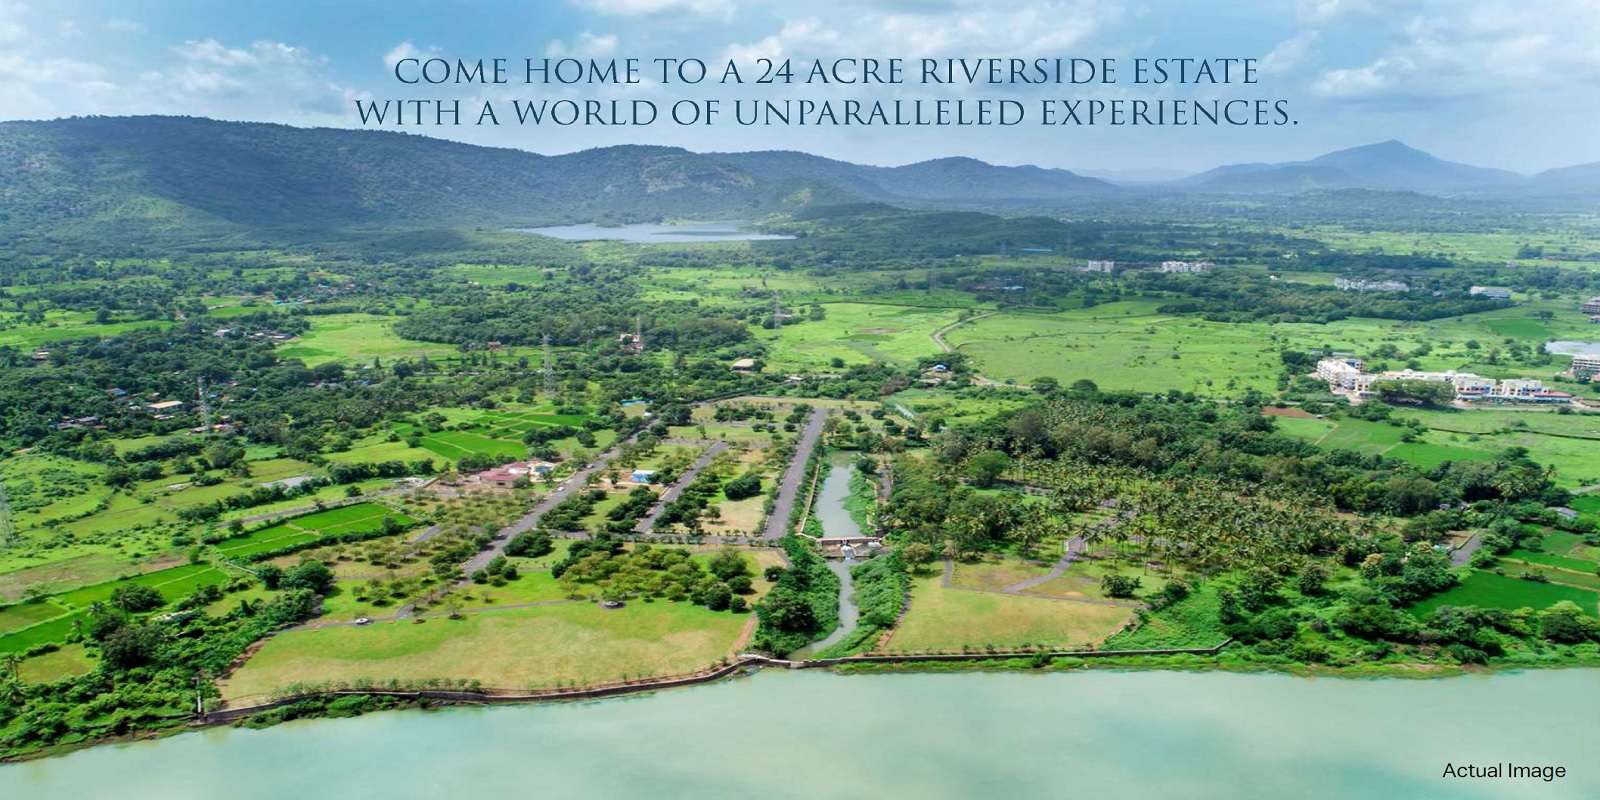 The Riverine Private Riverside Estate Cover Image